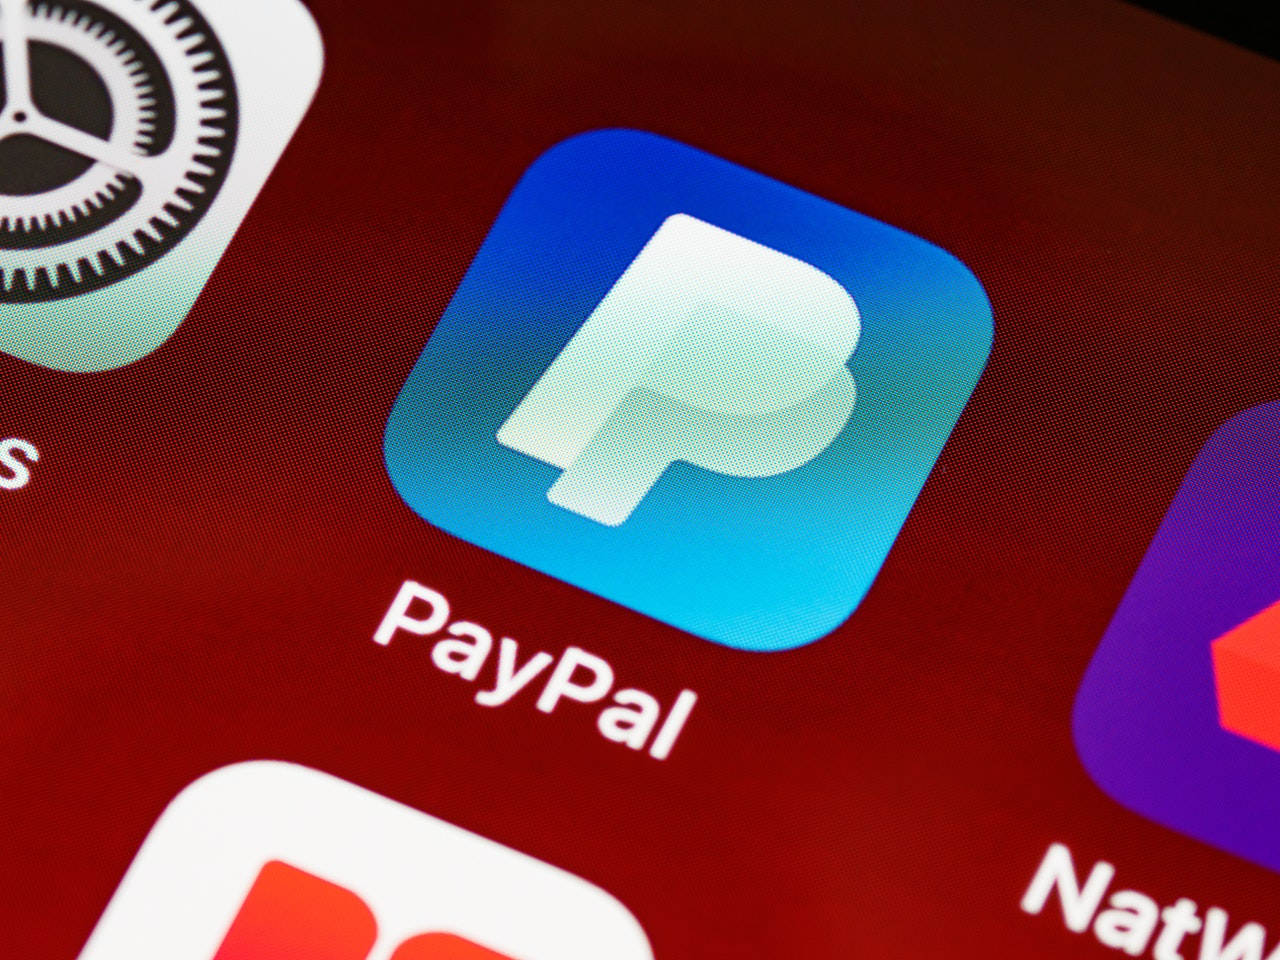 Kominfo Membuka Akses Sementara ke PayPal, Beri Masyarakat Waktu Untuk Withdraw